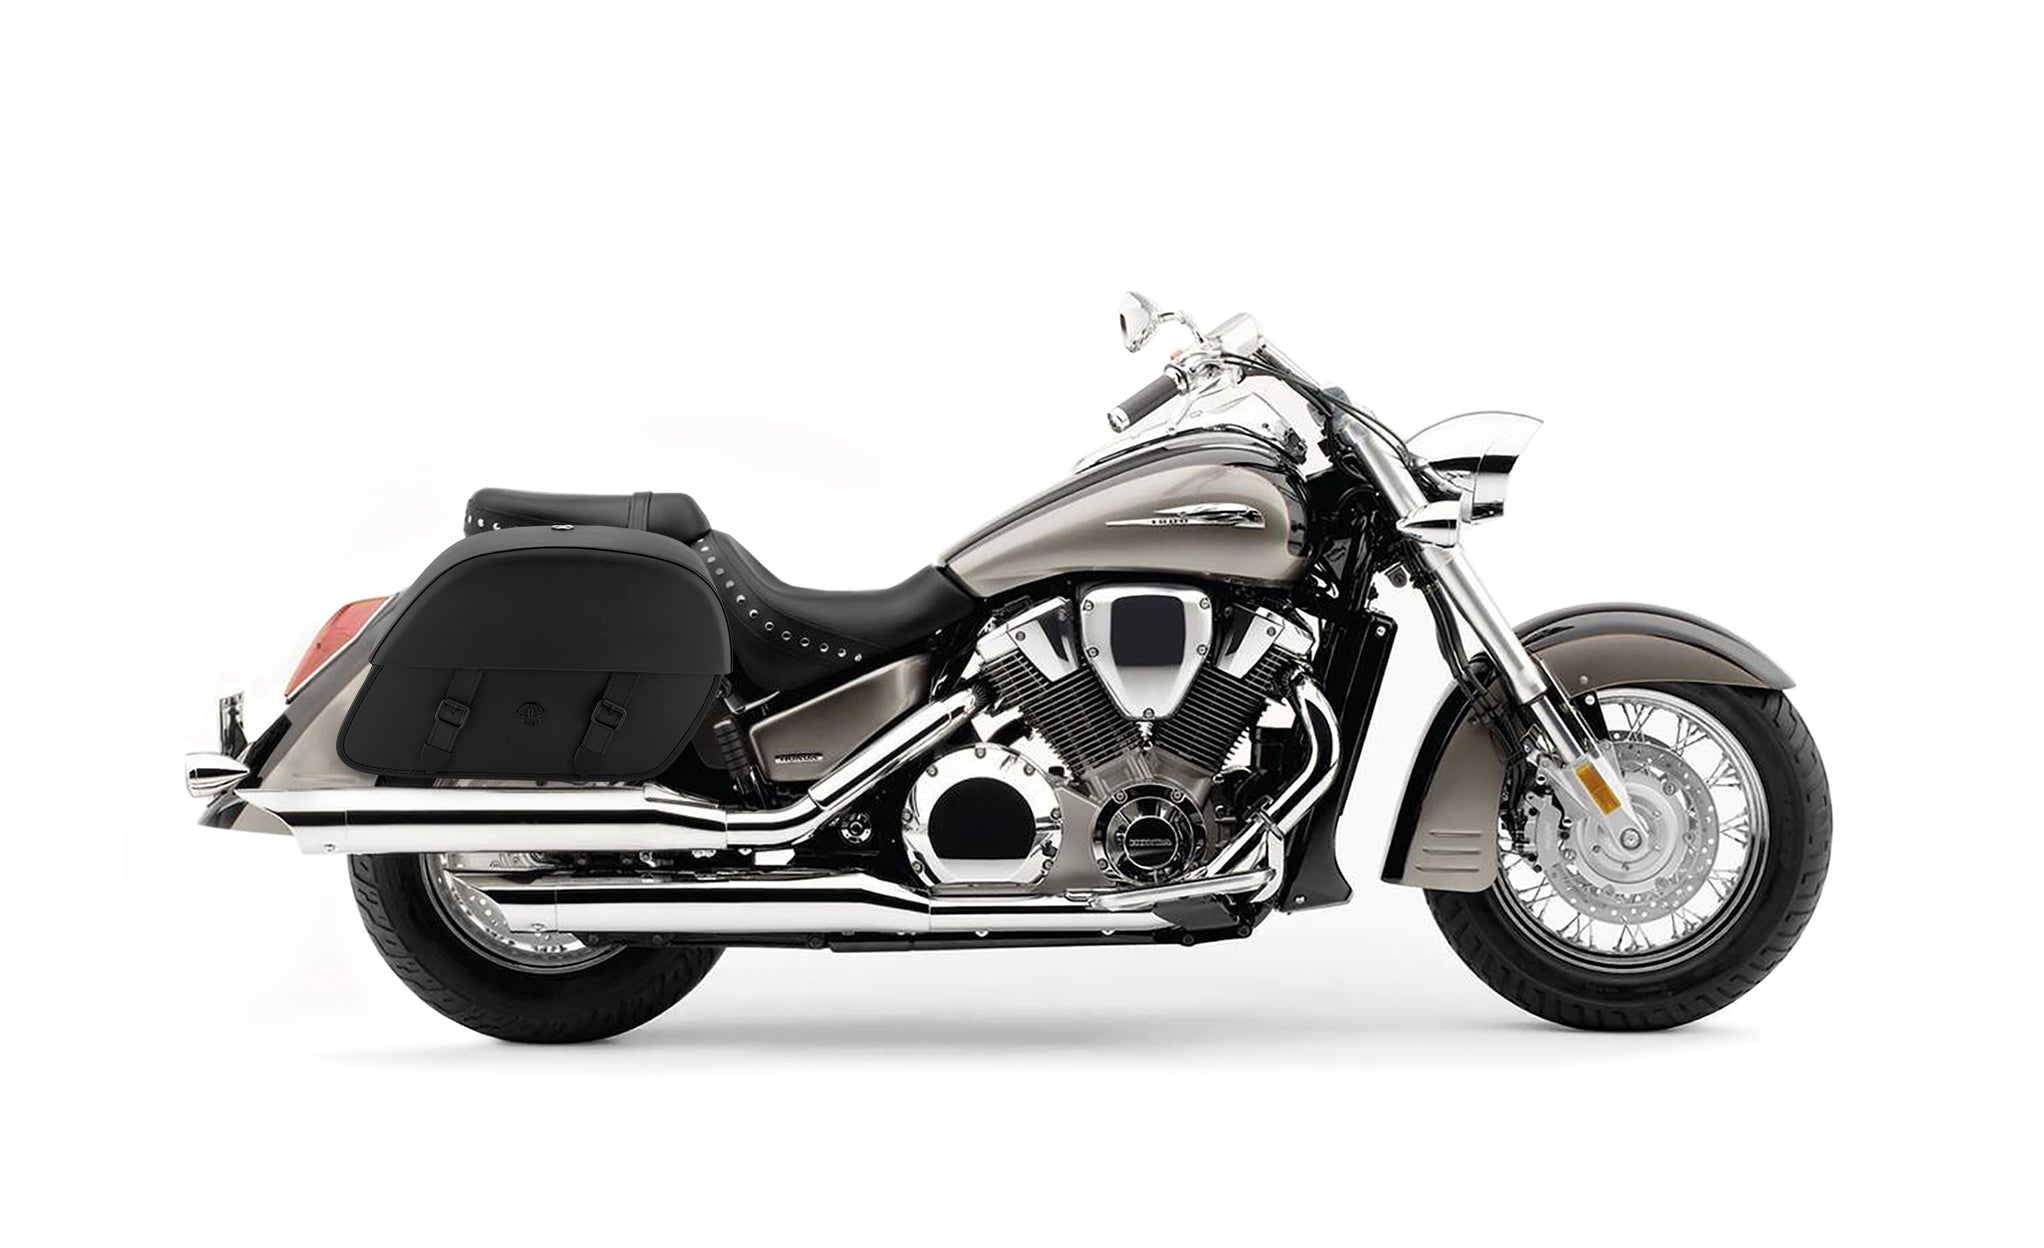 Viking Baelor Large Honda Vtx 1800 S Leather Motorcycle Saddlebags on Bike Photo @expand